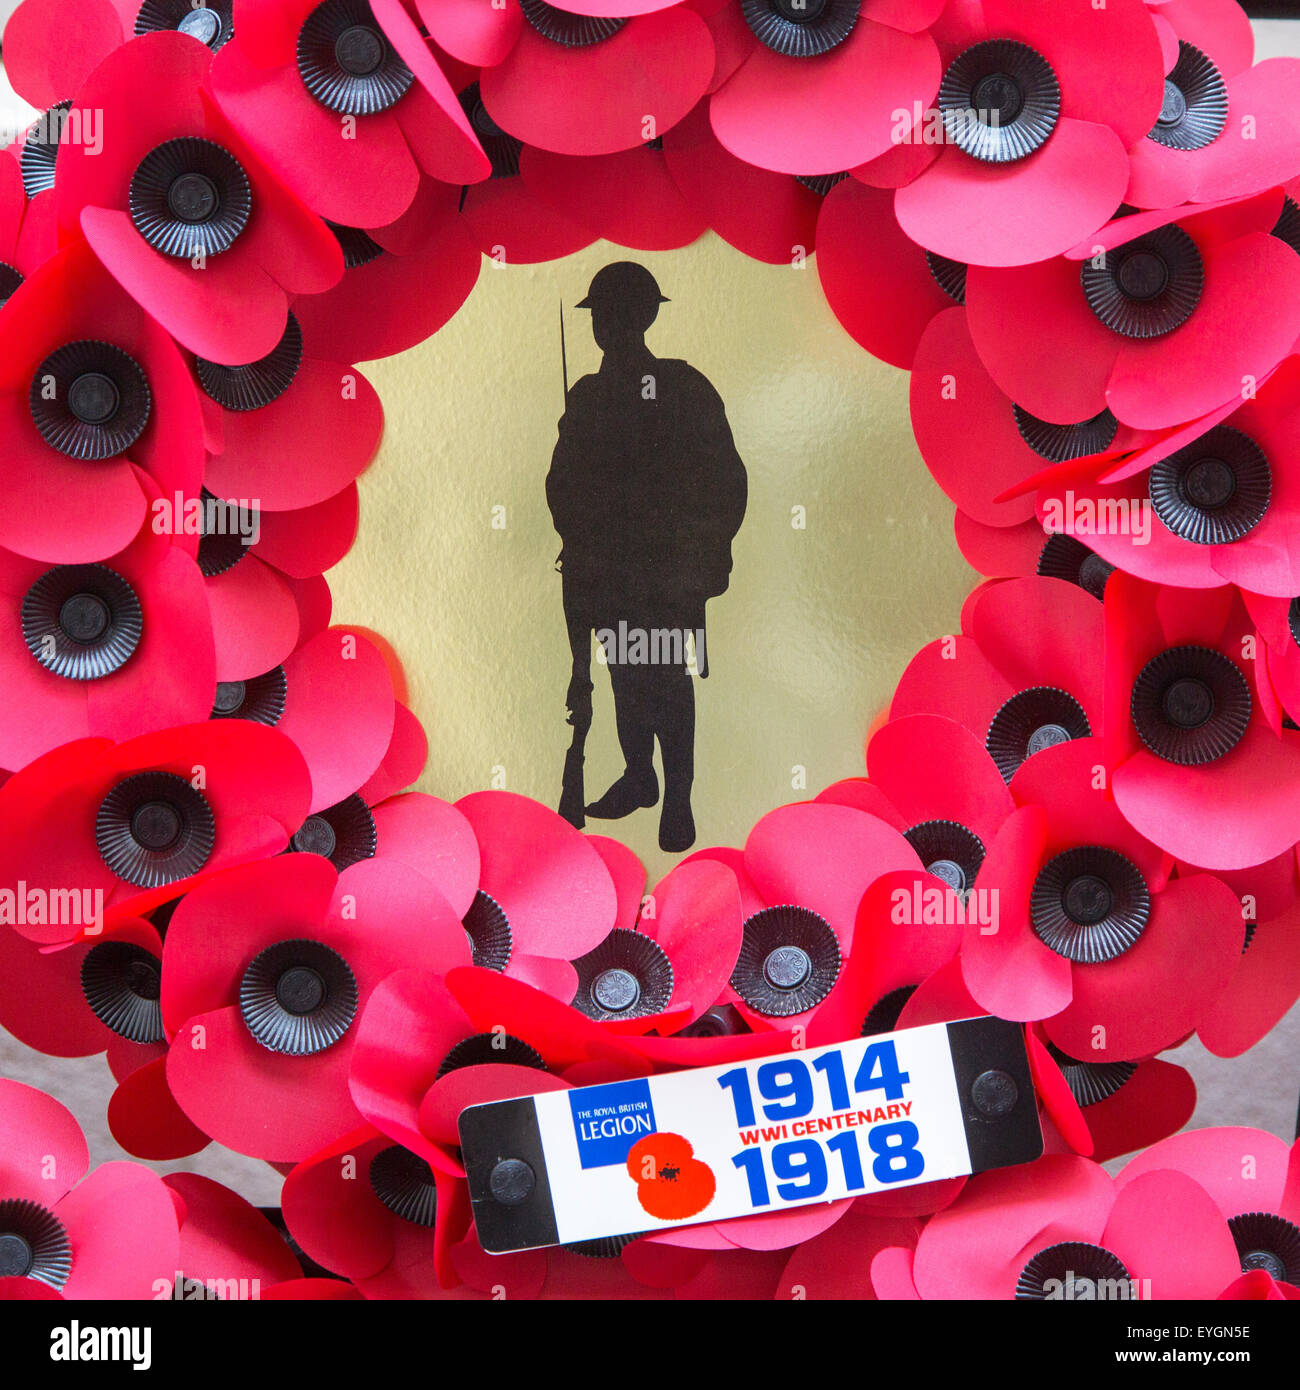 La couronne de pavot pour la première guerre mondiale, l'un des soldats au cours de la PREMIÈRE GUERRE MONDIALE le centenaire du souvenir Banque D'Images